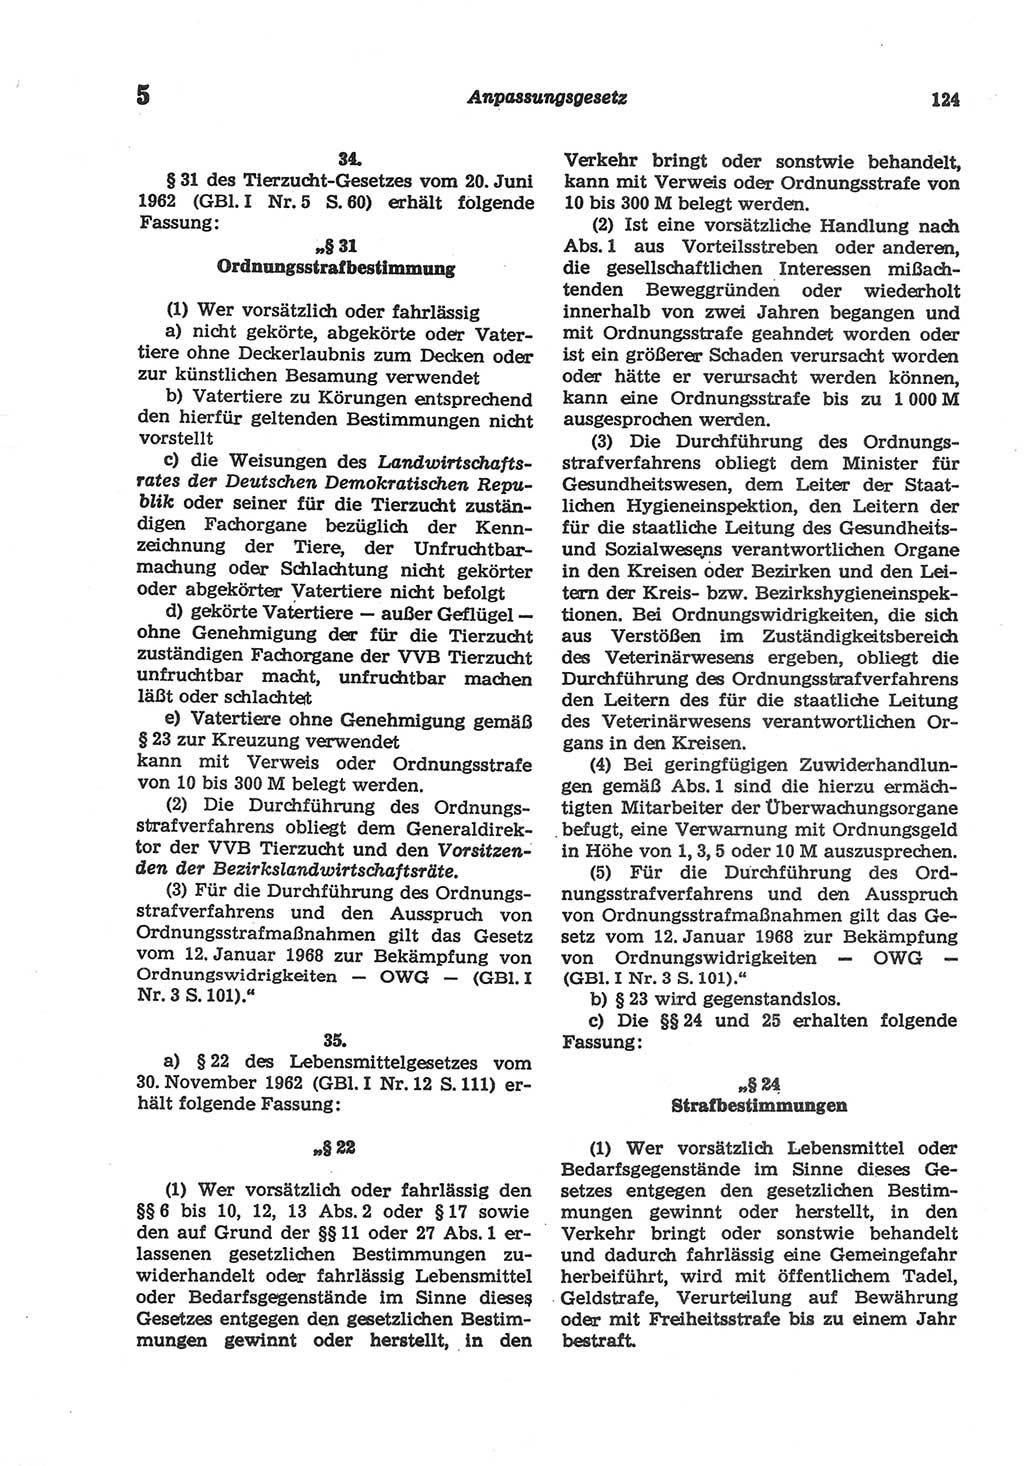 Strafgesetzbuch (StGB) der Deutschen Demokratischen Republik (DDR) und angrenzende Gesetze und Bestimmungen 1977, Seite 124 (StGB DDR Ges. Best. 1977, S. 124)